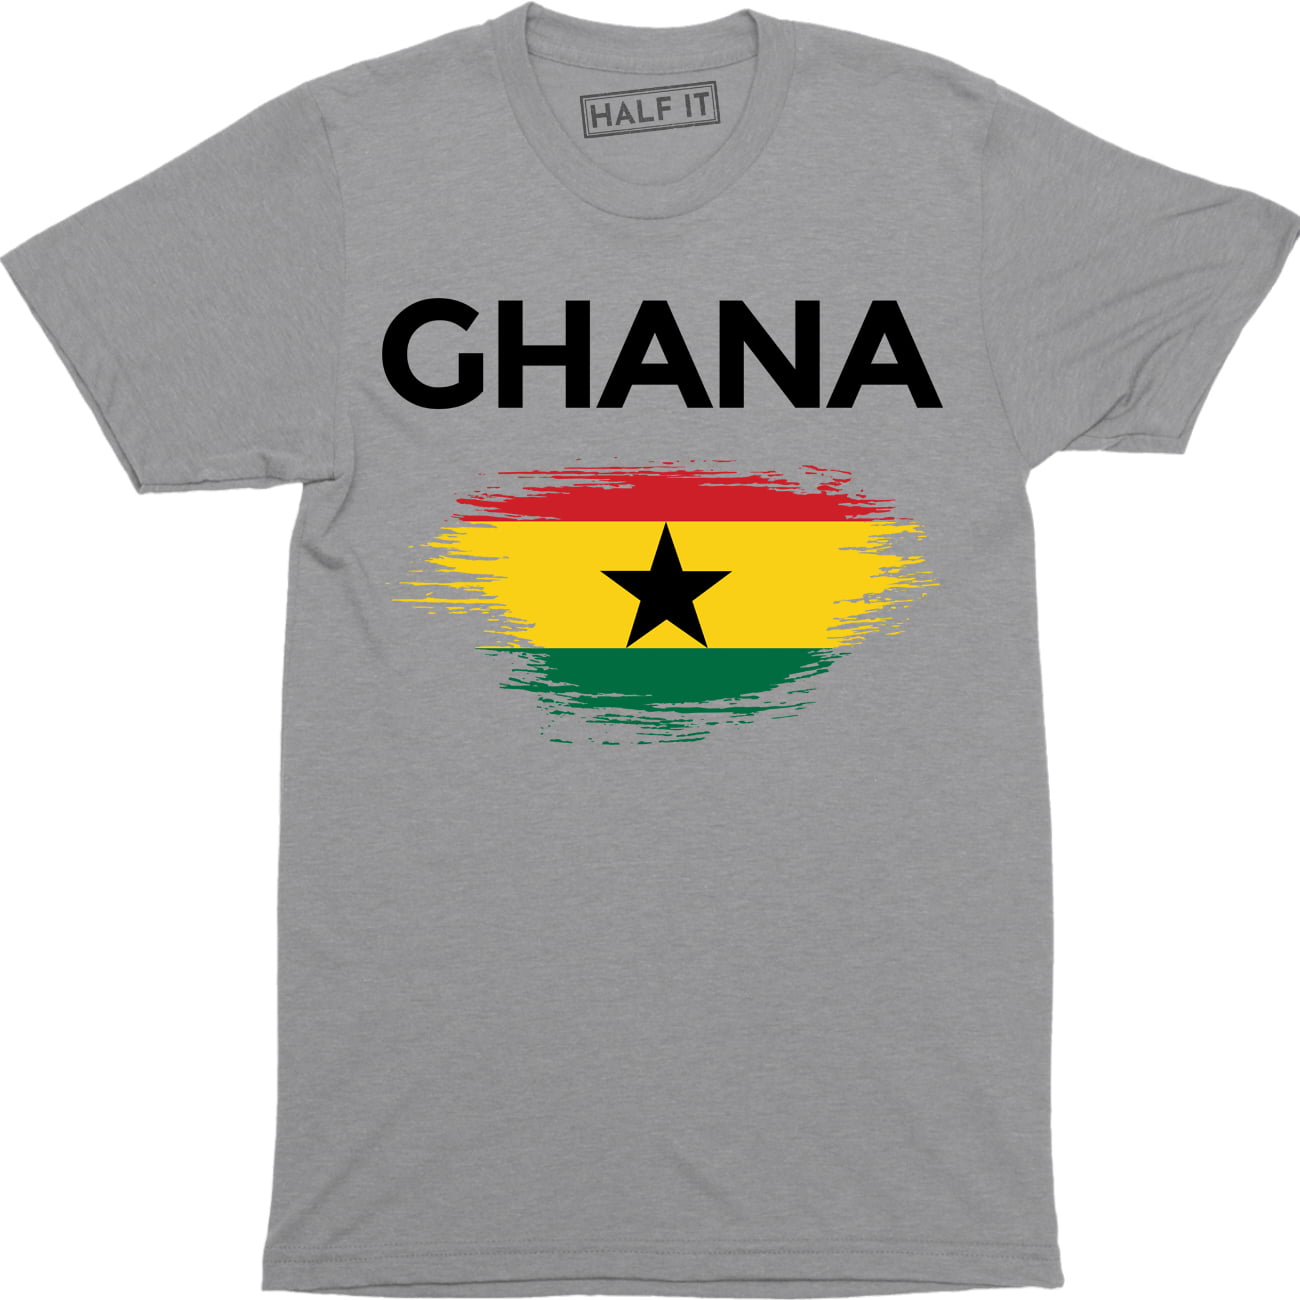 GHANA GRUNGE FLAG MENS T-SHIRT TEE TOP GHANAIAN SHIRT FOOTBALL JERSEY GIFT